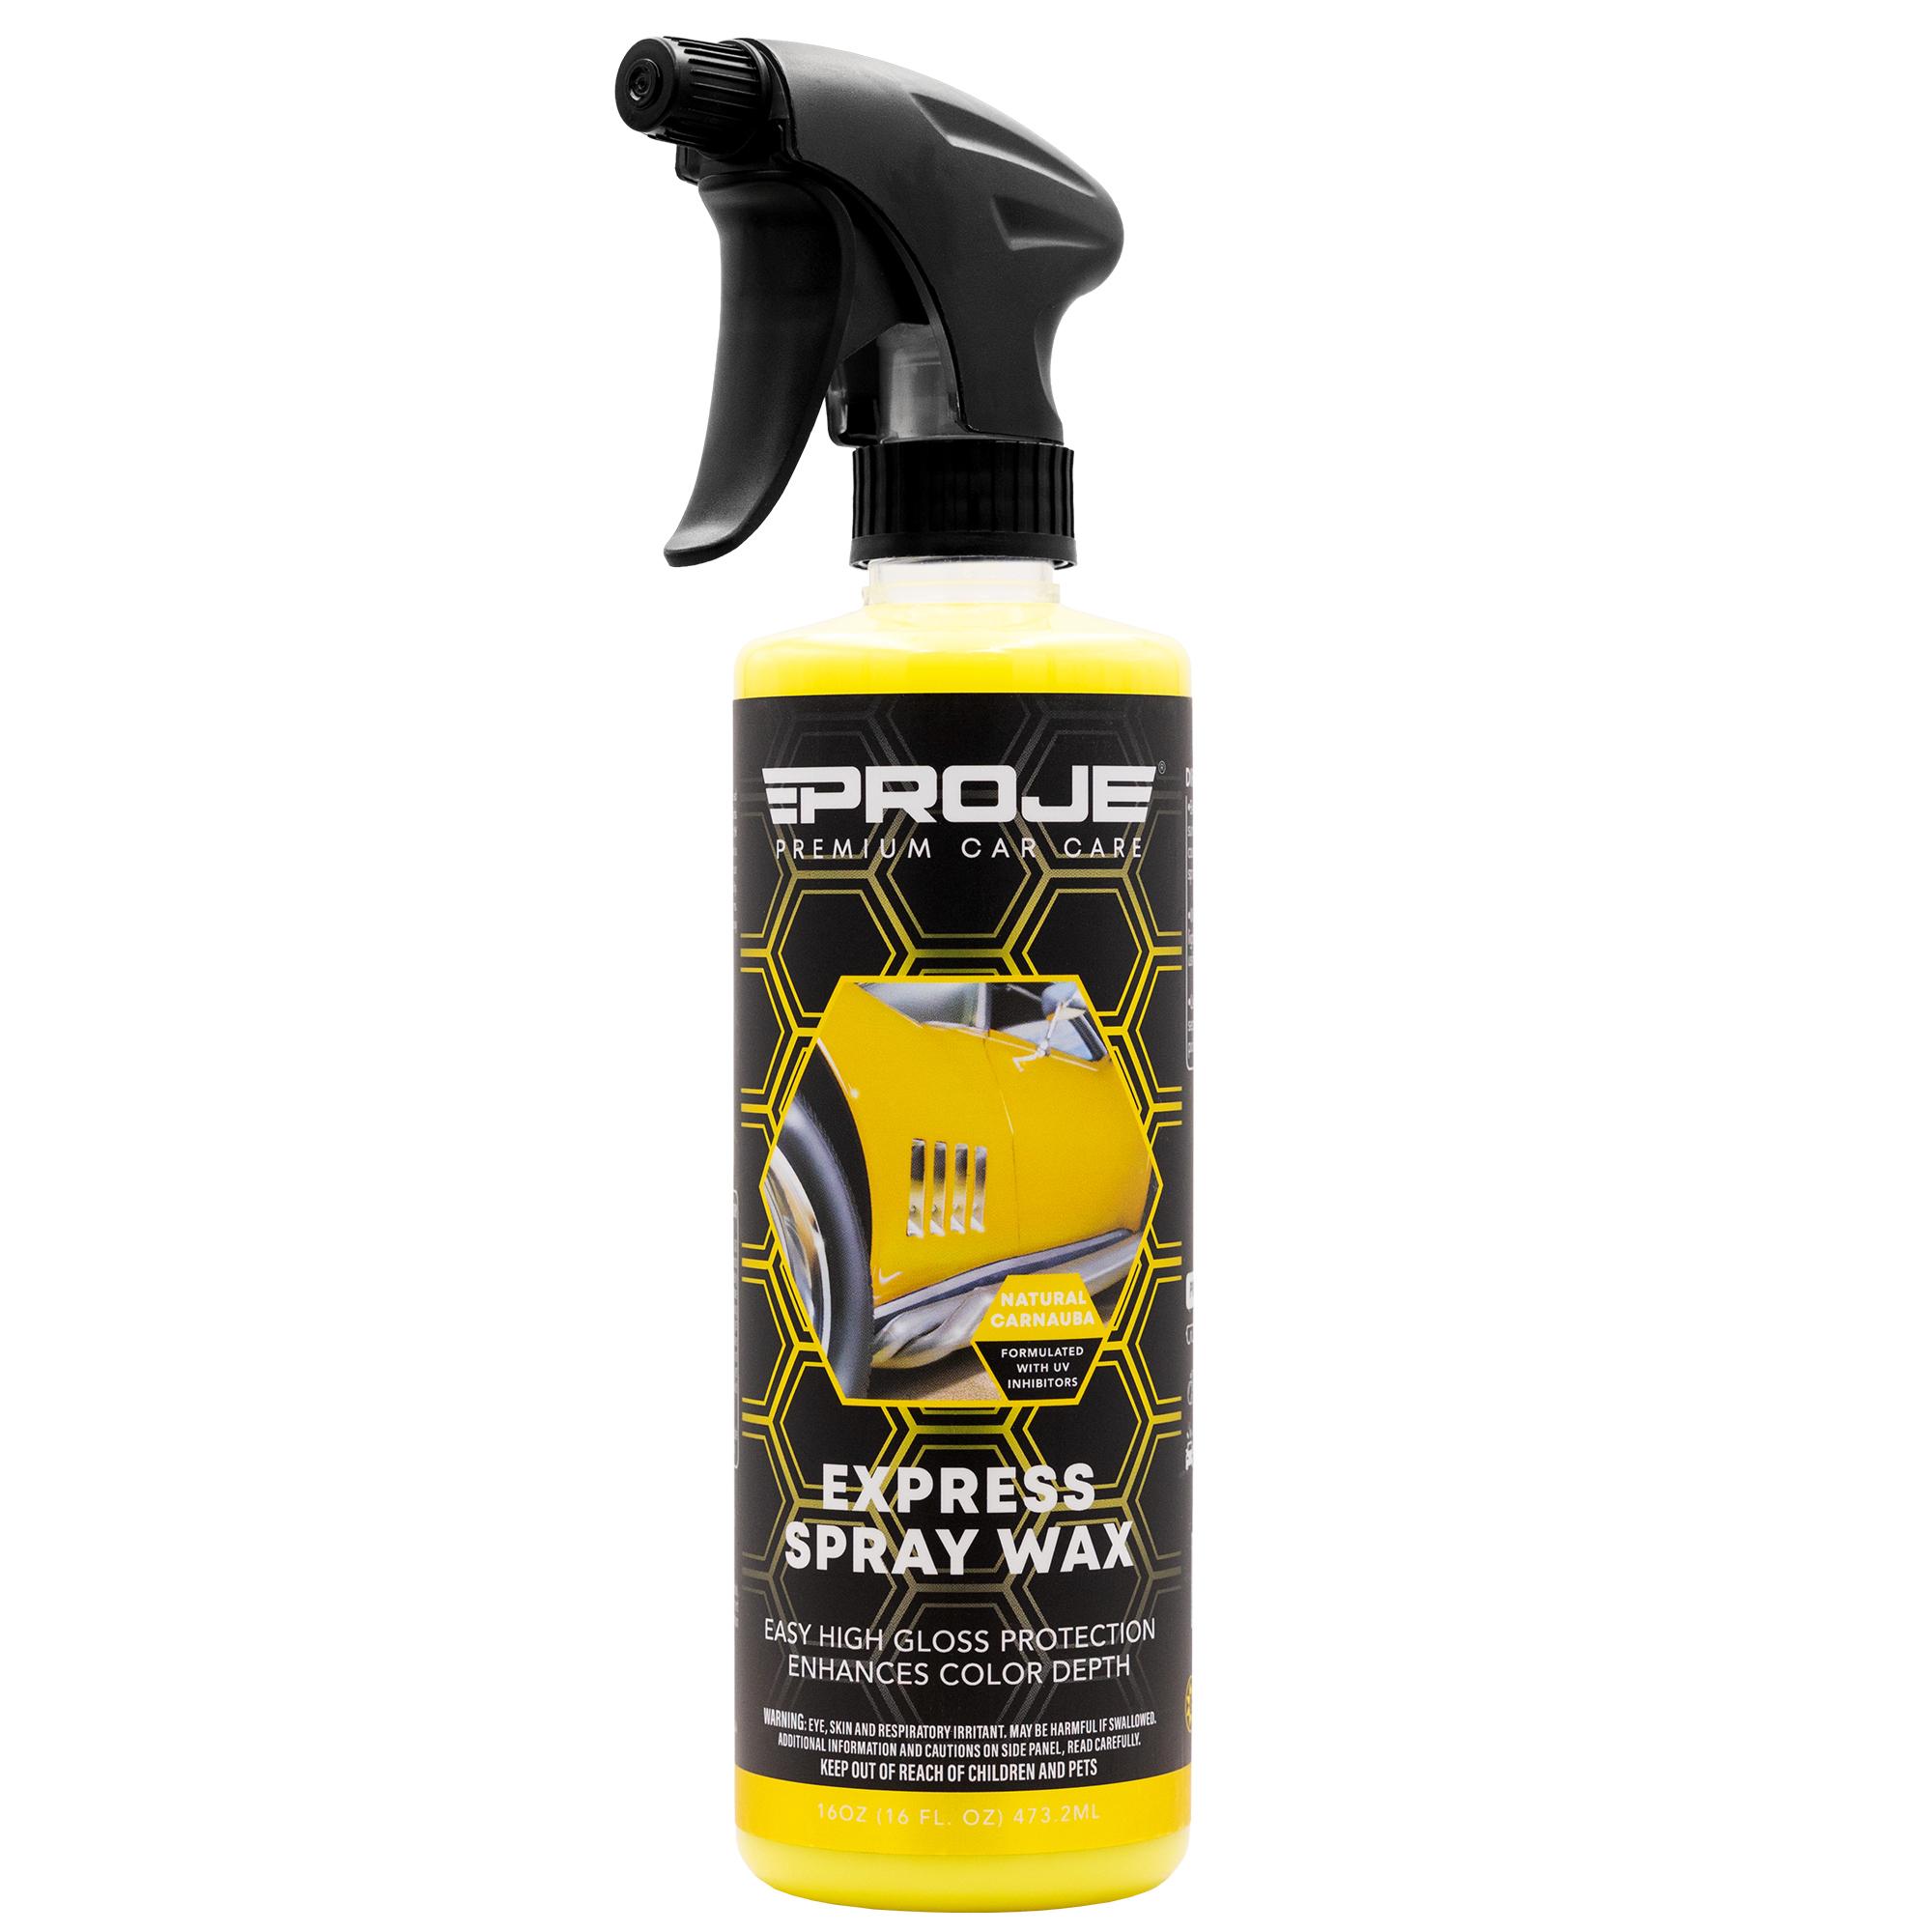 Express Spray Wax - 16 oz - Brazilian Carnauba Spray Wax